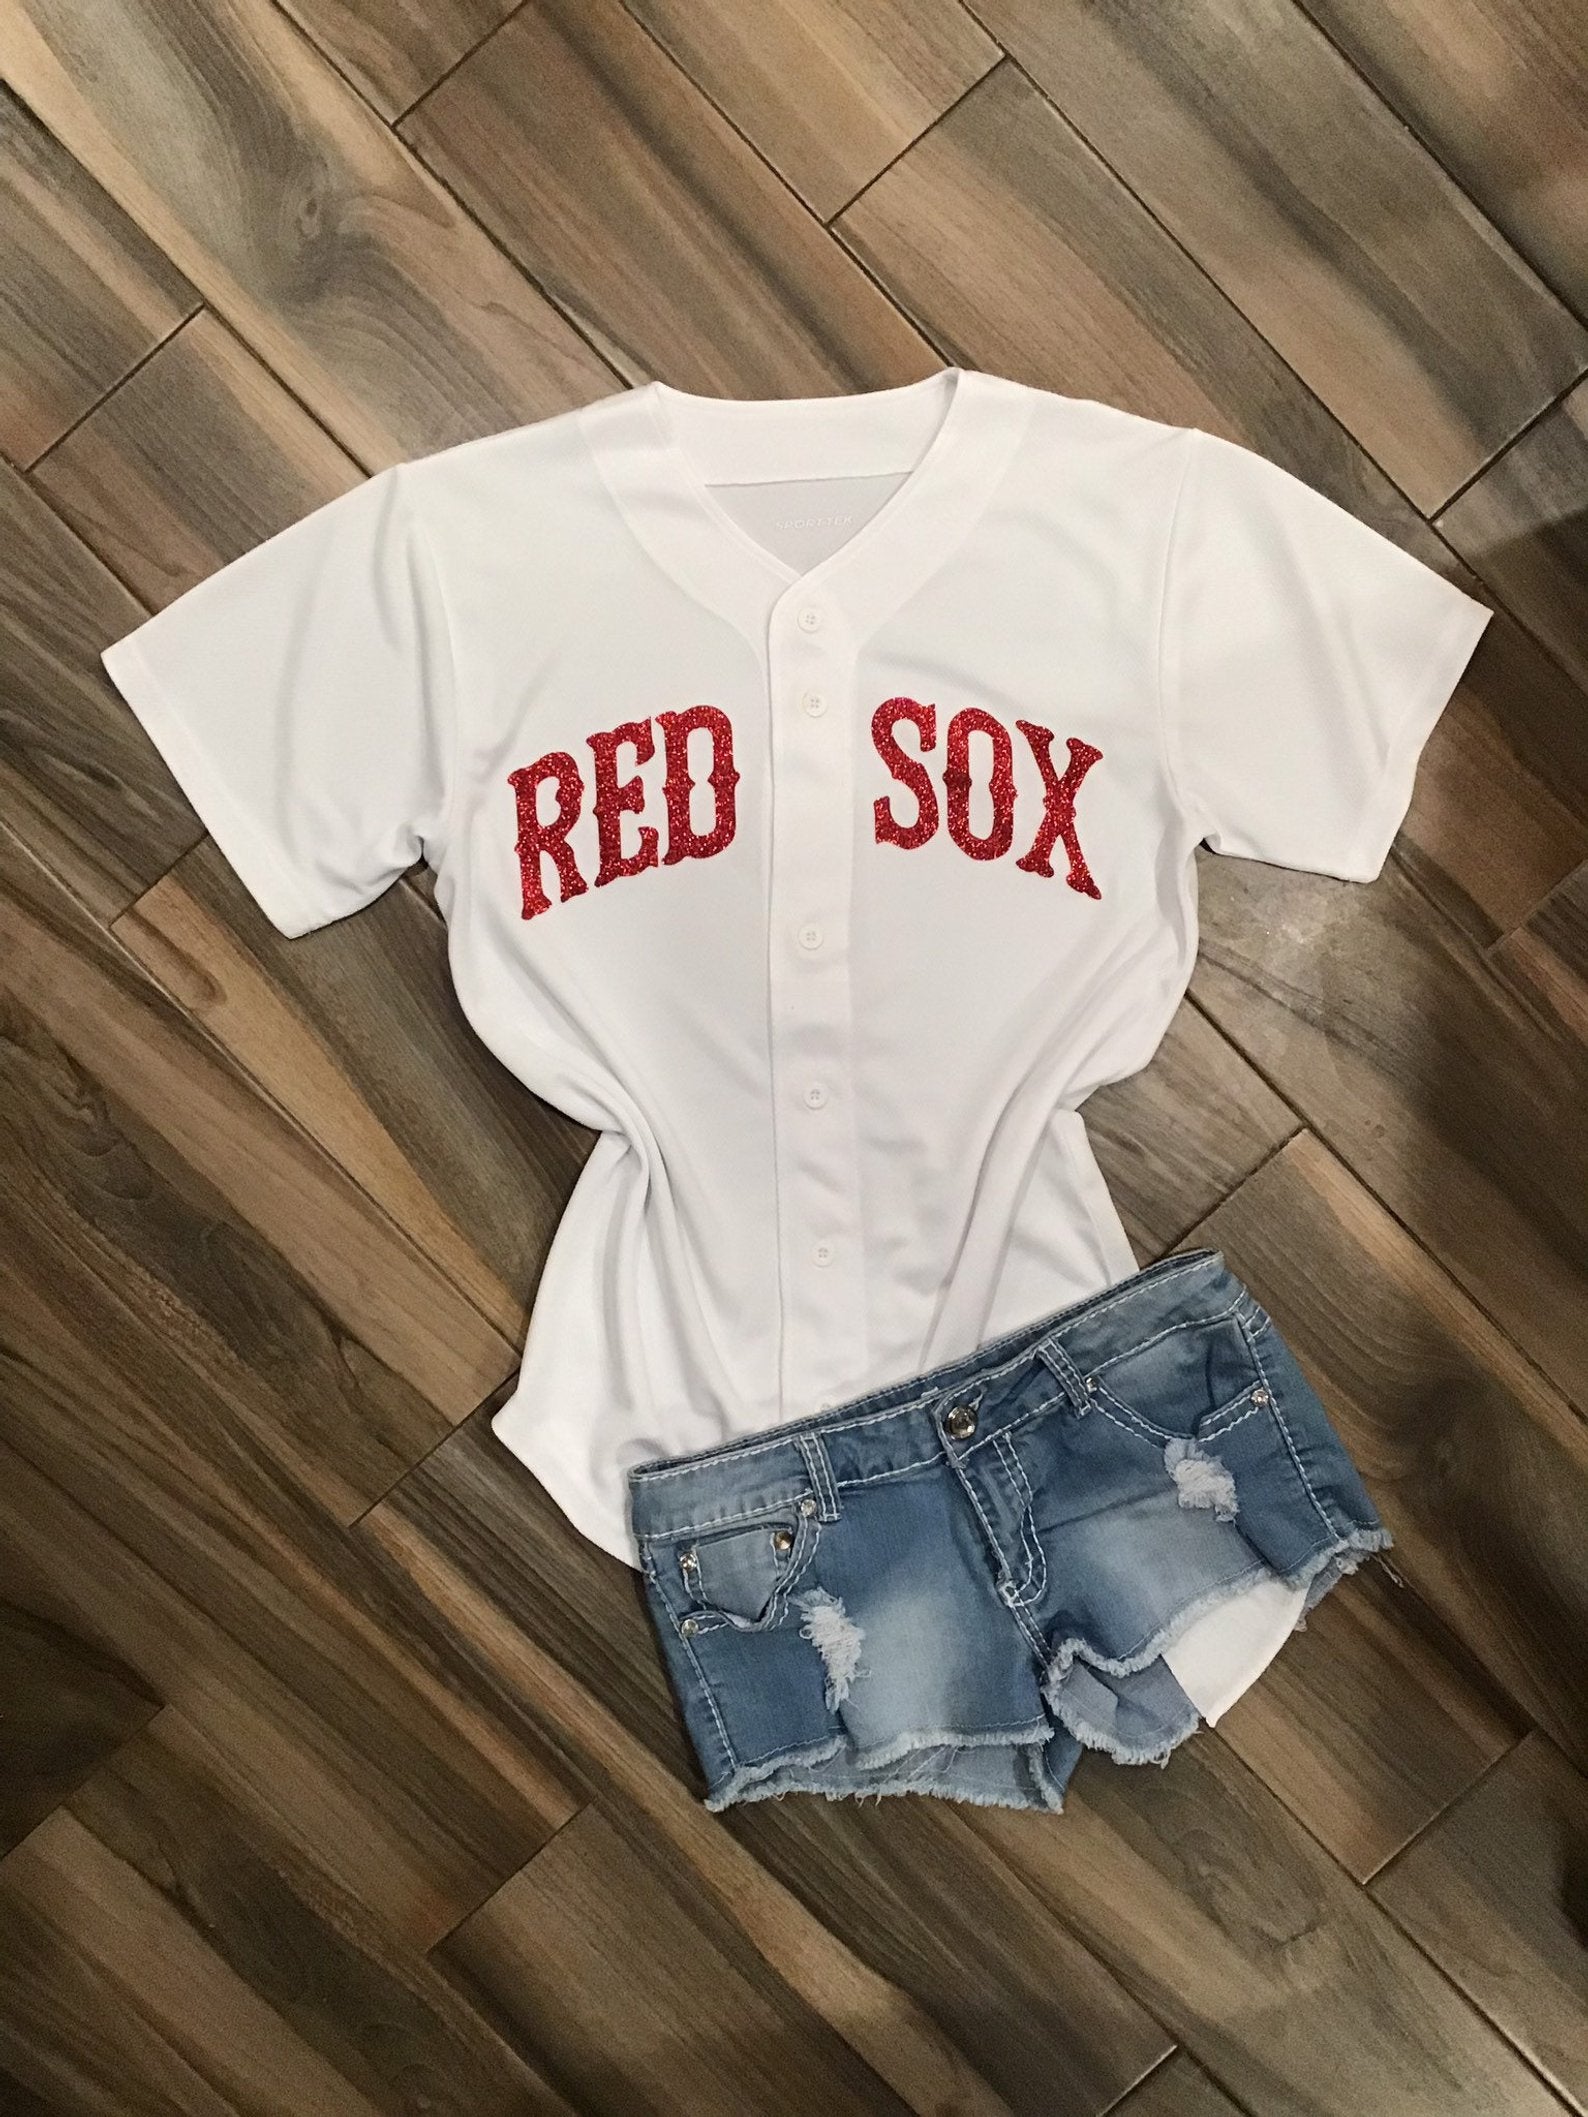 Lulu Grace Designs White Tampa Bay Rays Inspired Baseball Jersey: Baseball Fan Gear & Apparel for Women S / Ladies Muscle Tank